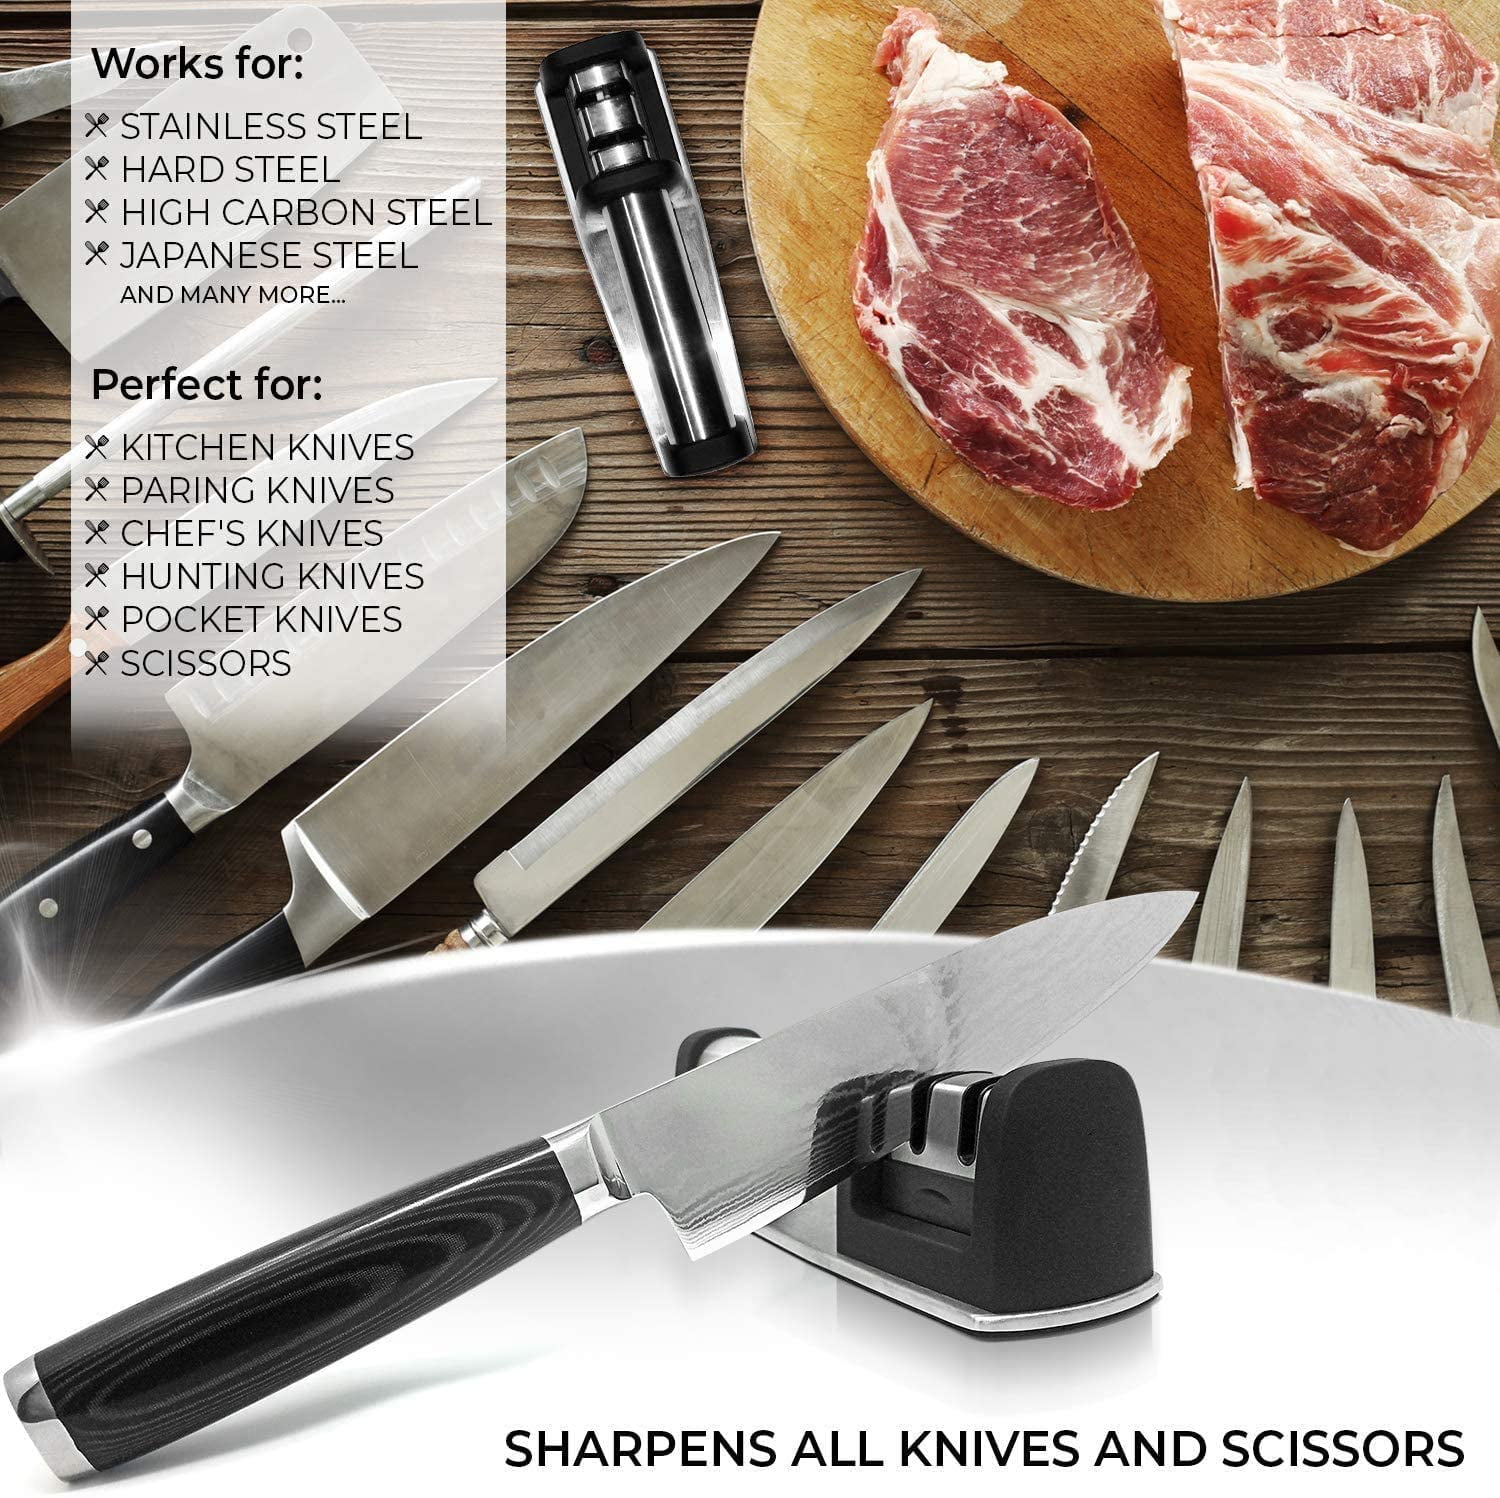 Manual Knife Sharpener - Professional 2-Stage Knife Sharpening